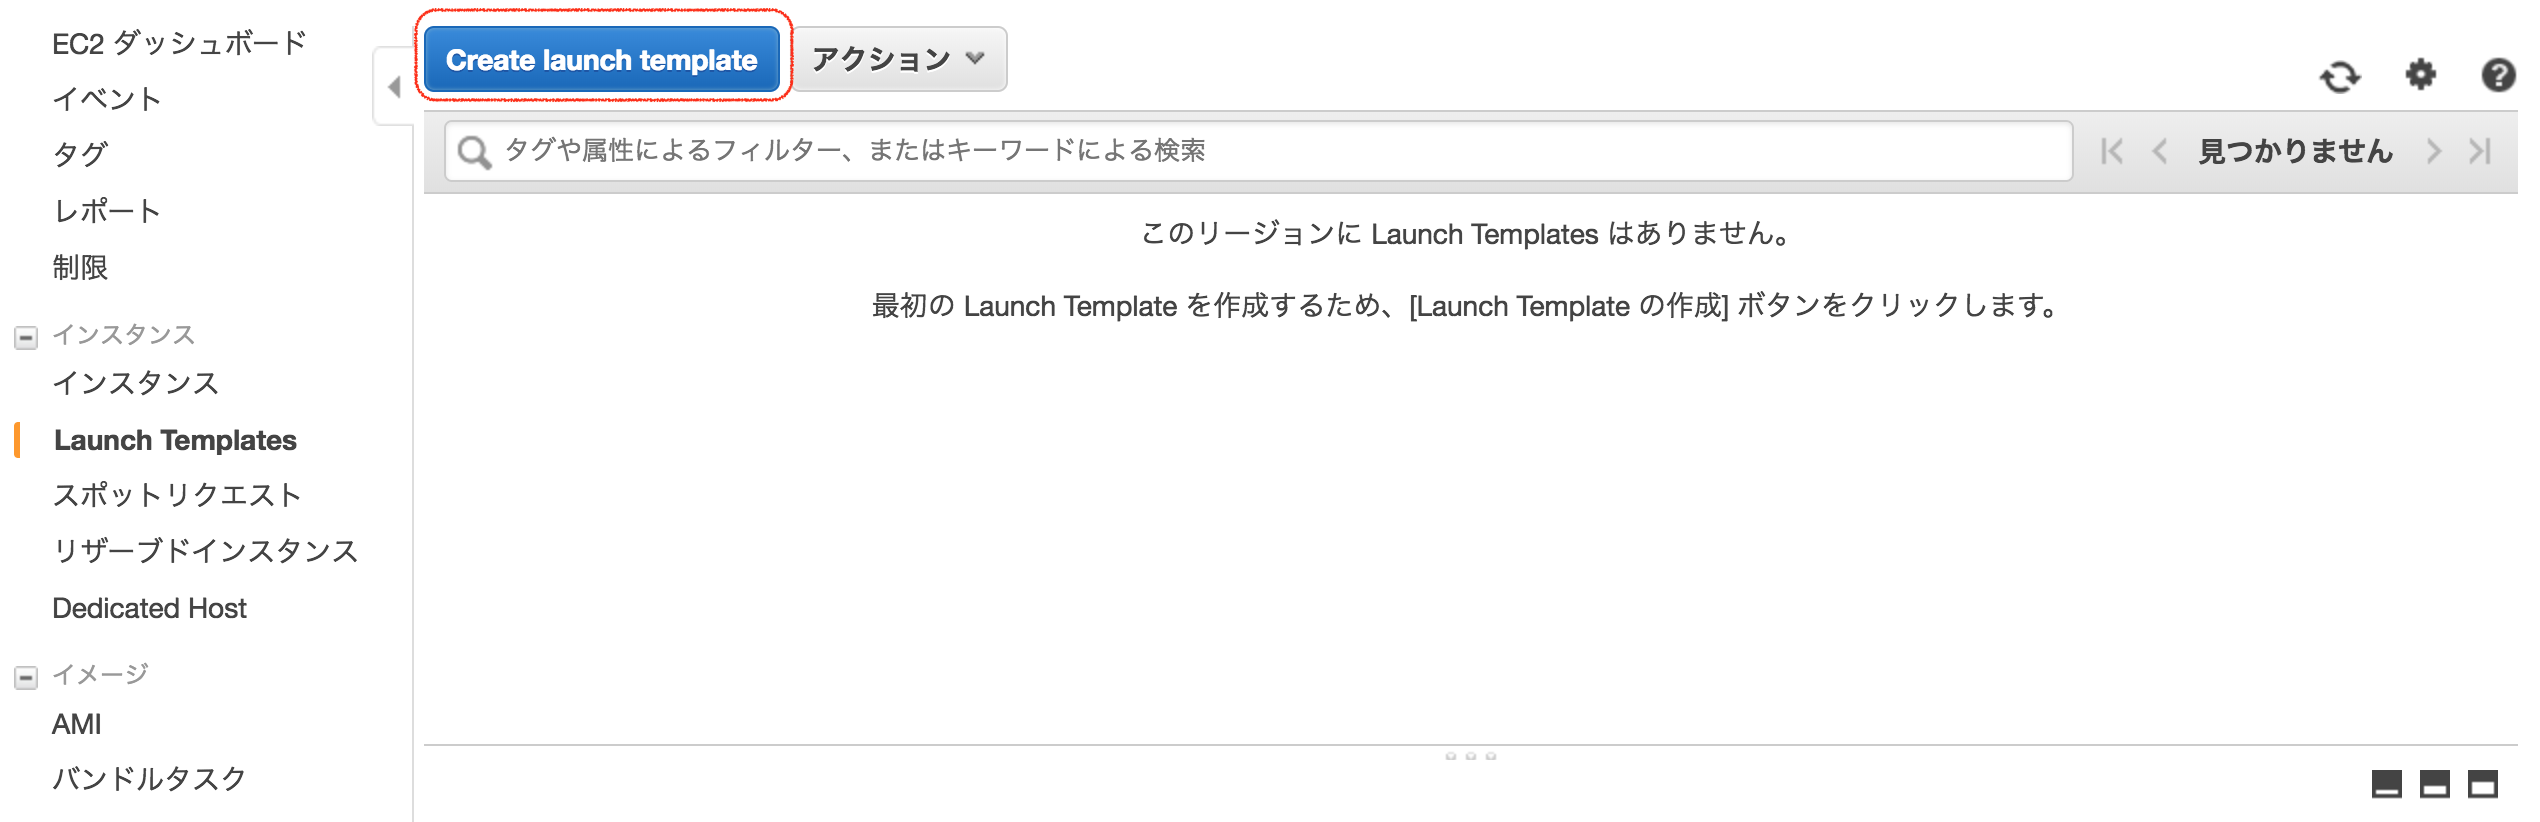 LaunchTemplates01.png